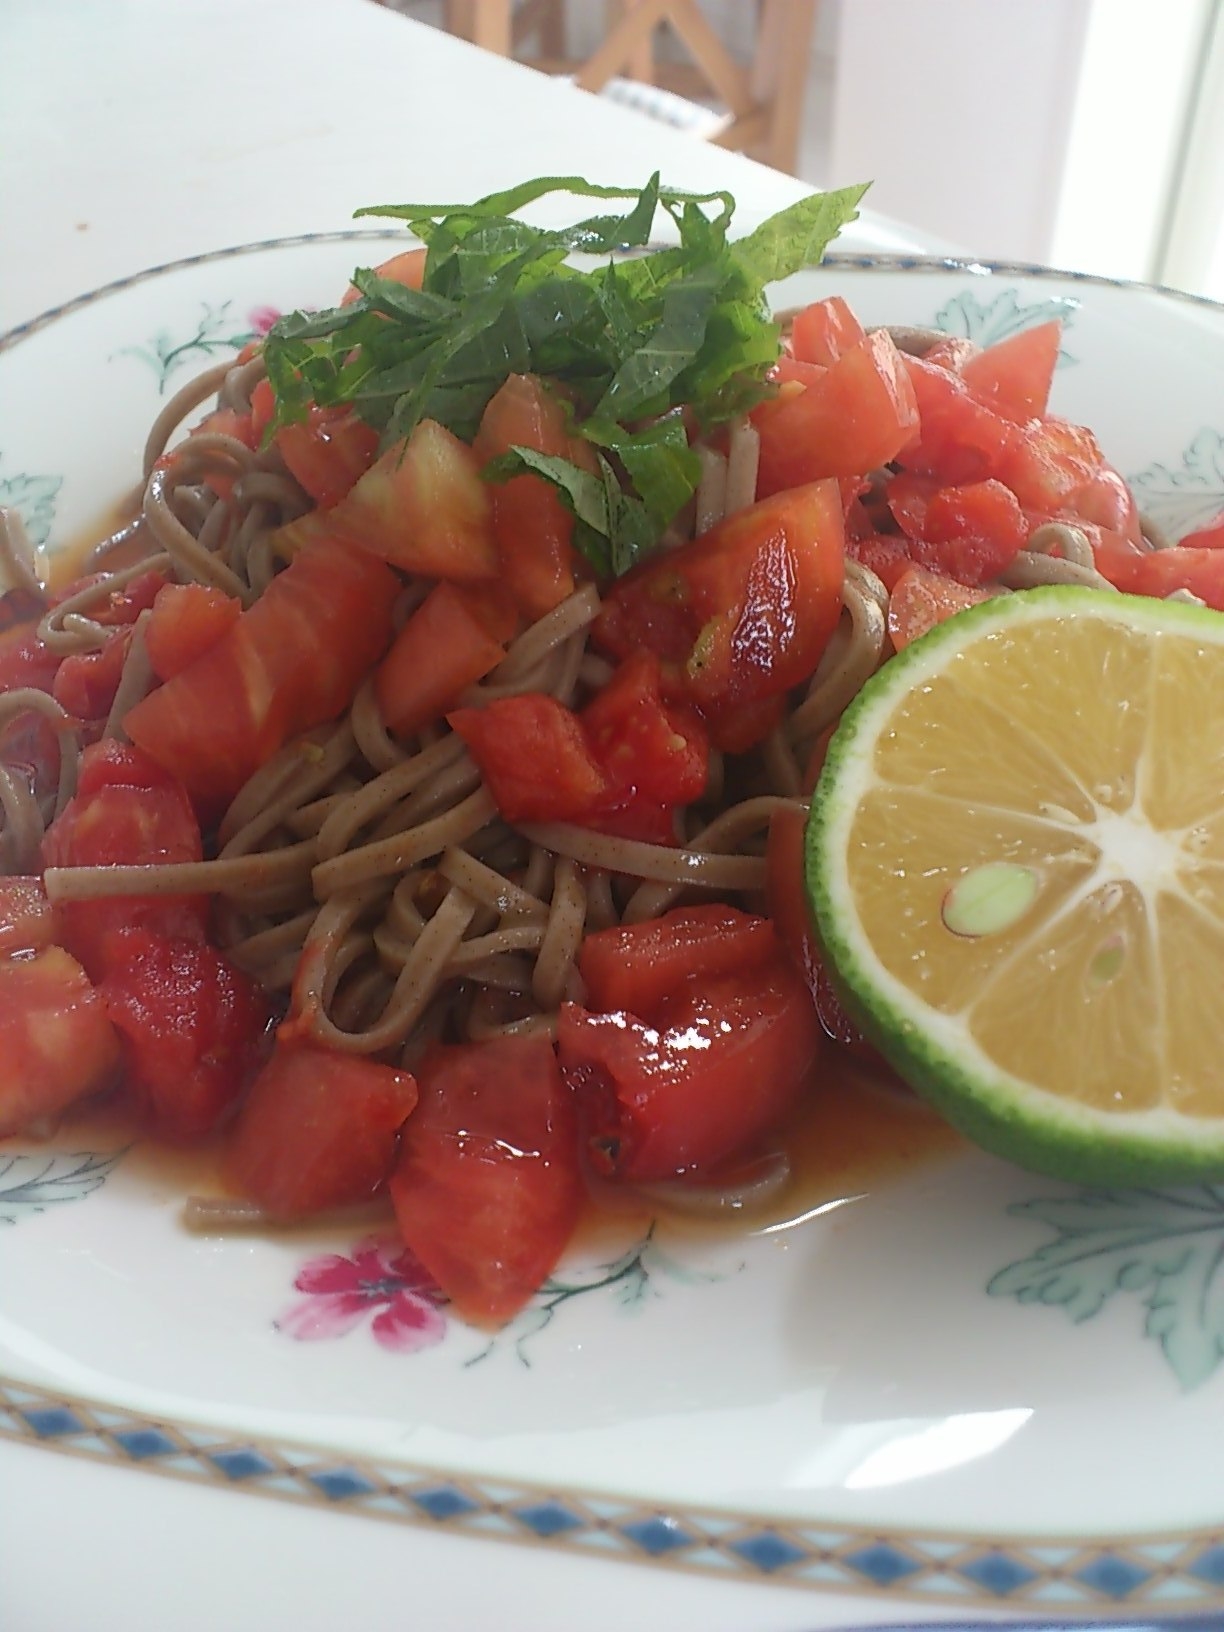 トマトとカボスのおそば オリーブオイル風味のレシピ 作り方 丹下 慶子 料理教室検索サイト クスパ